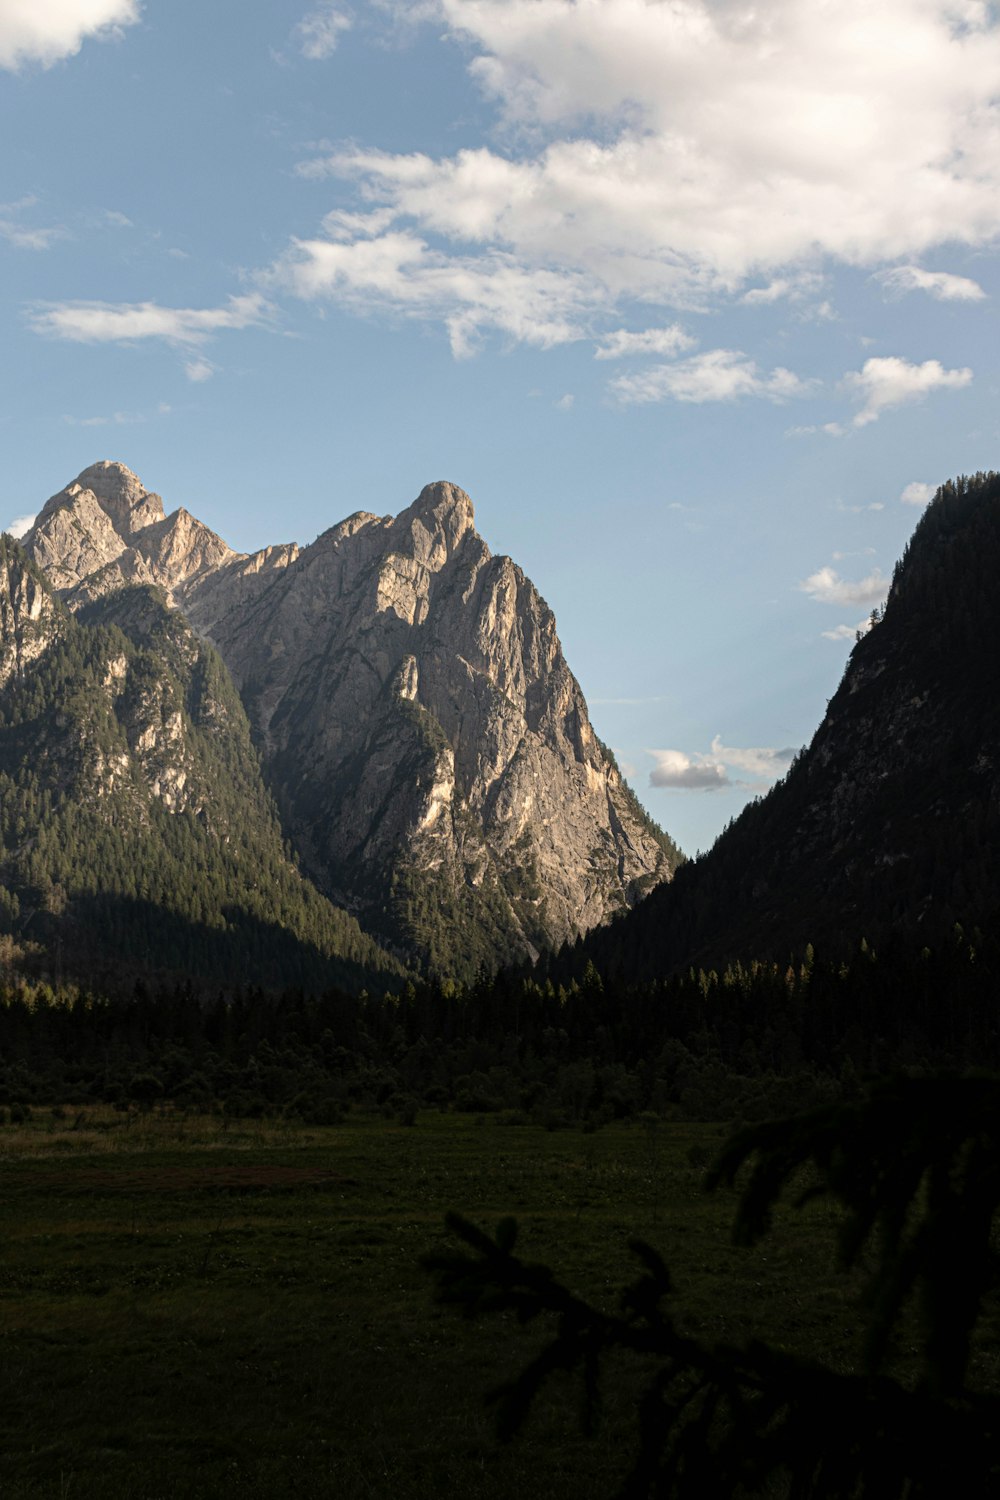 Una vista de una cadena montañosa en la distancia